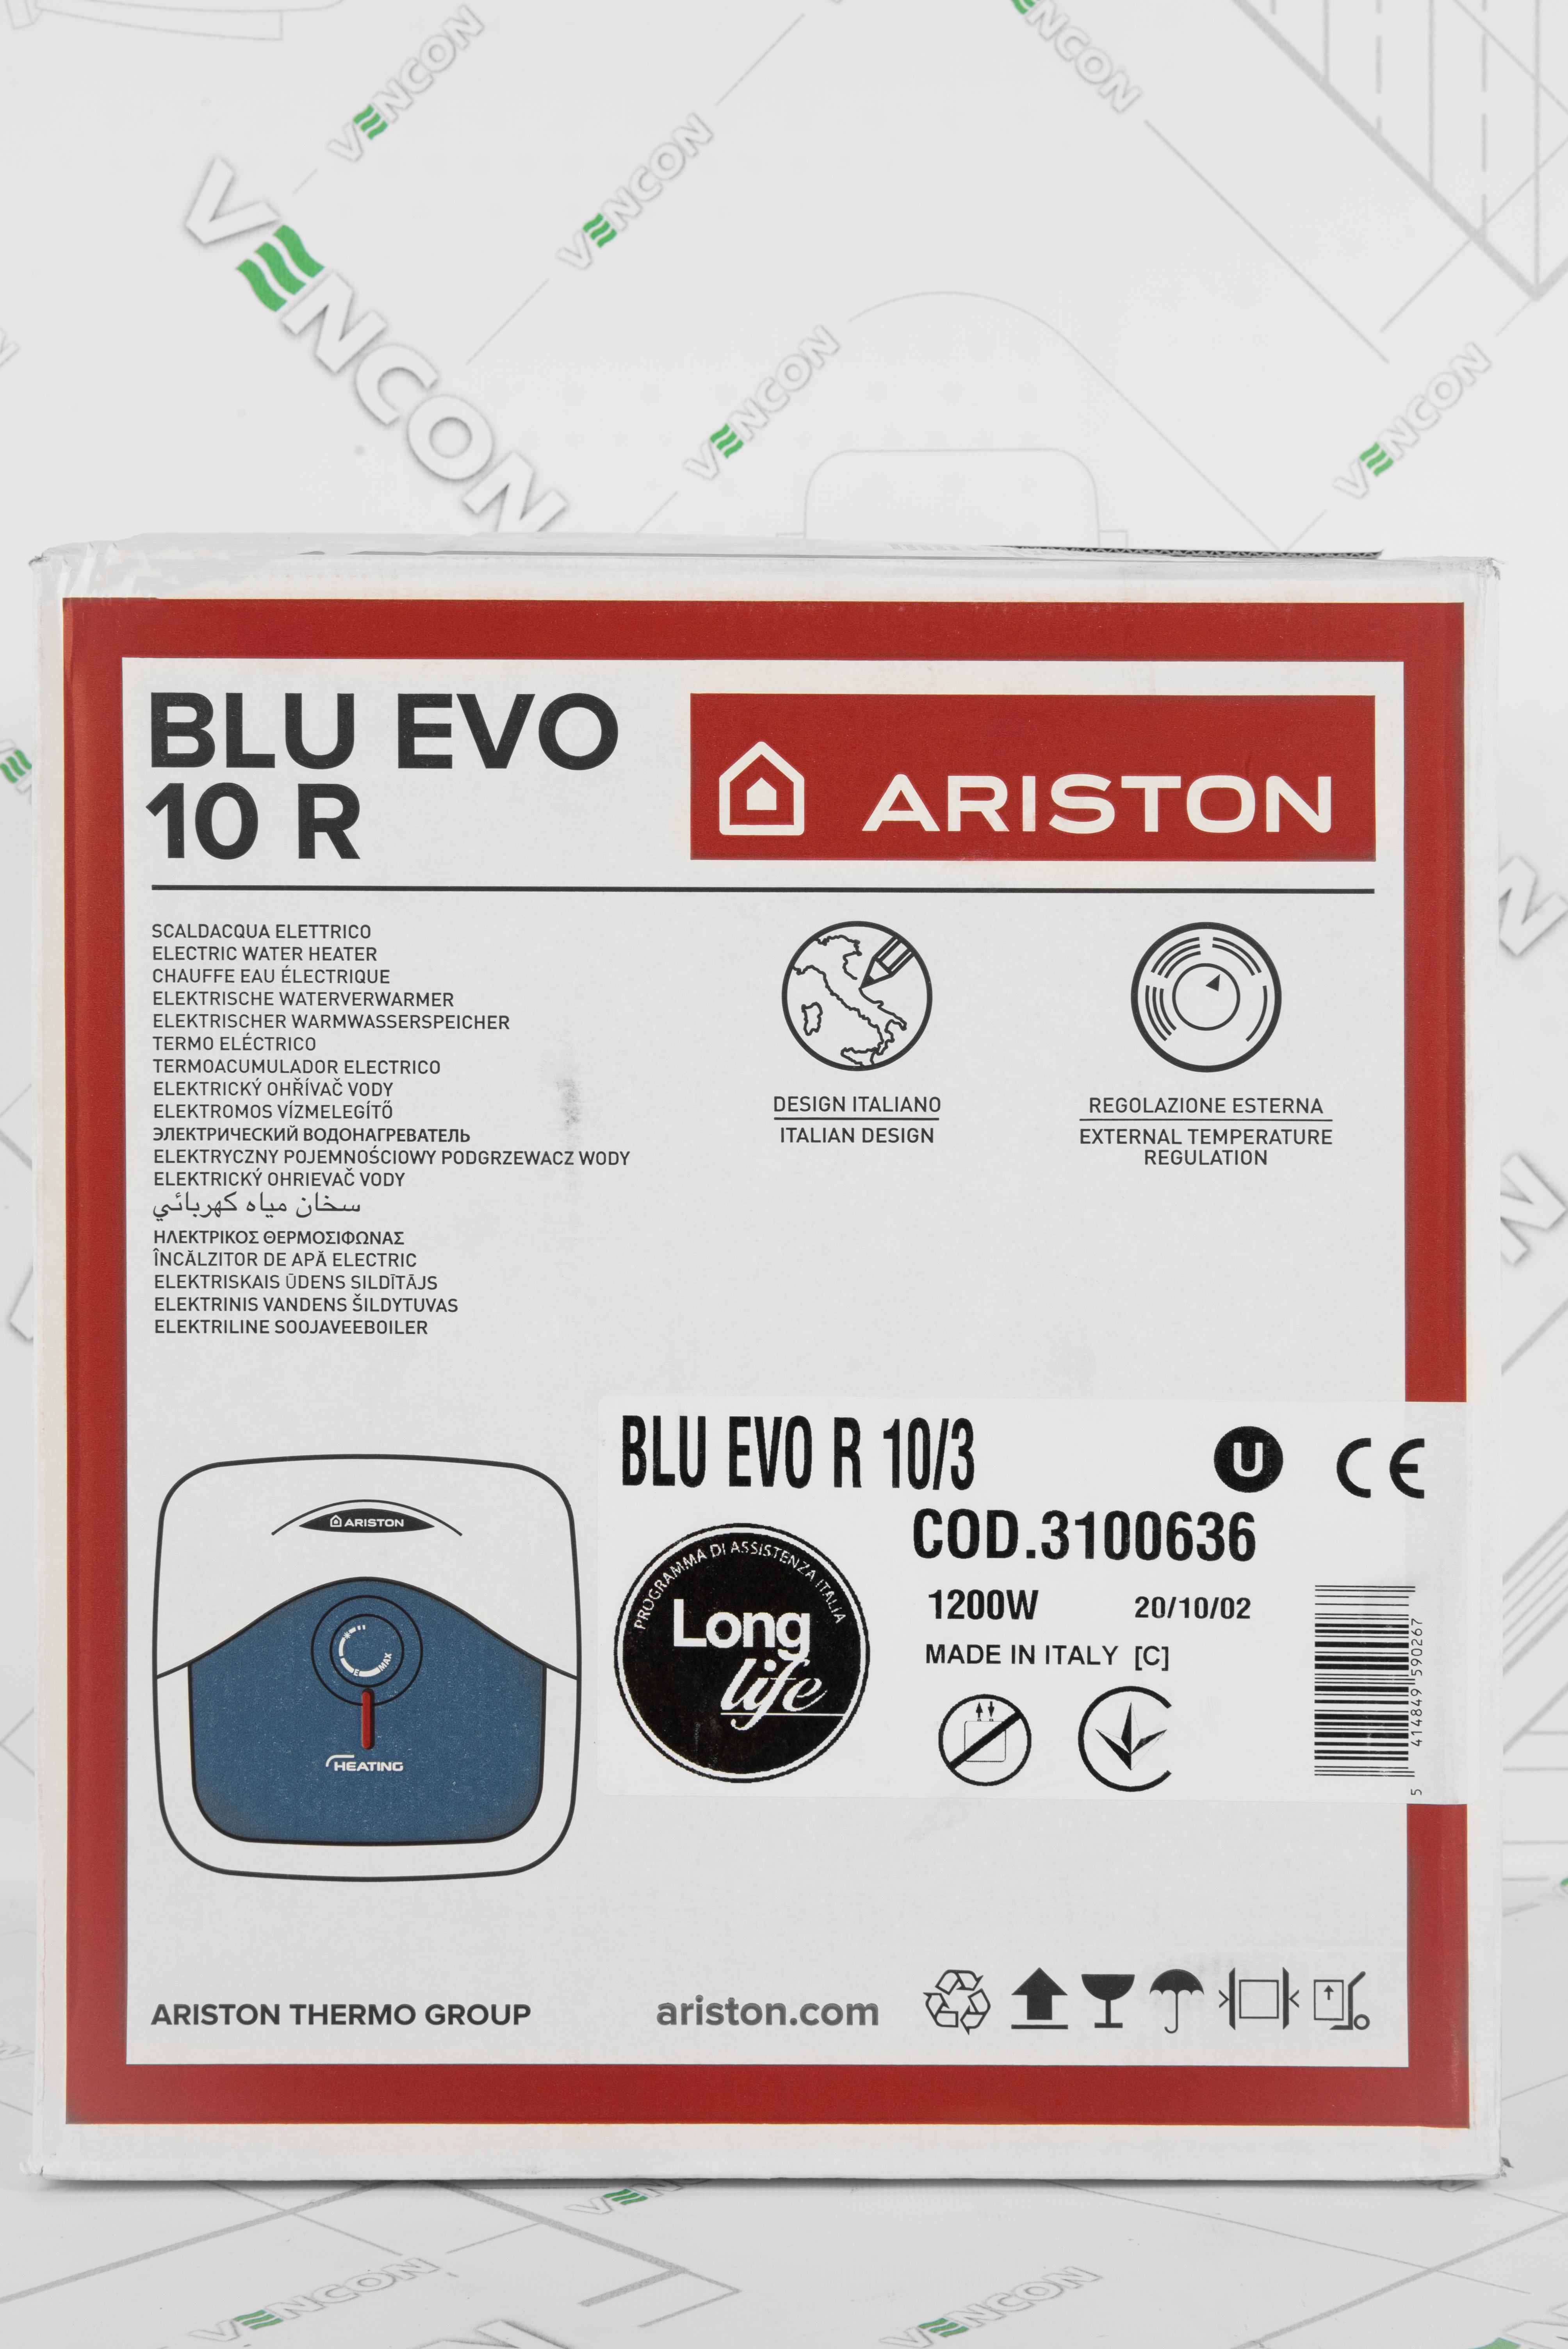 Бойлер Ariston Blu Evo R 10/3 обзор - фото 11